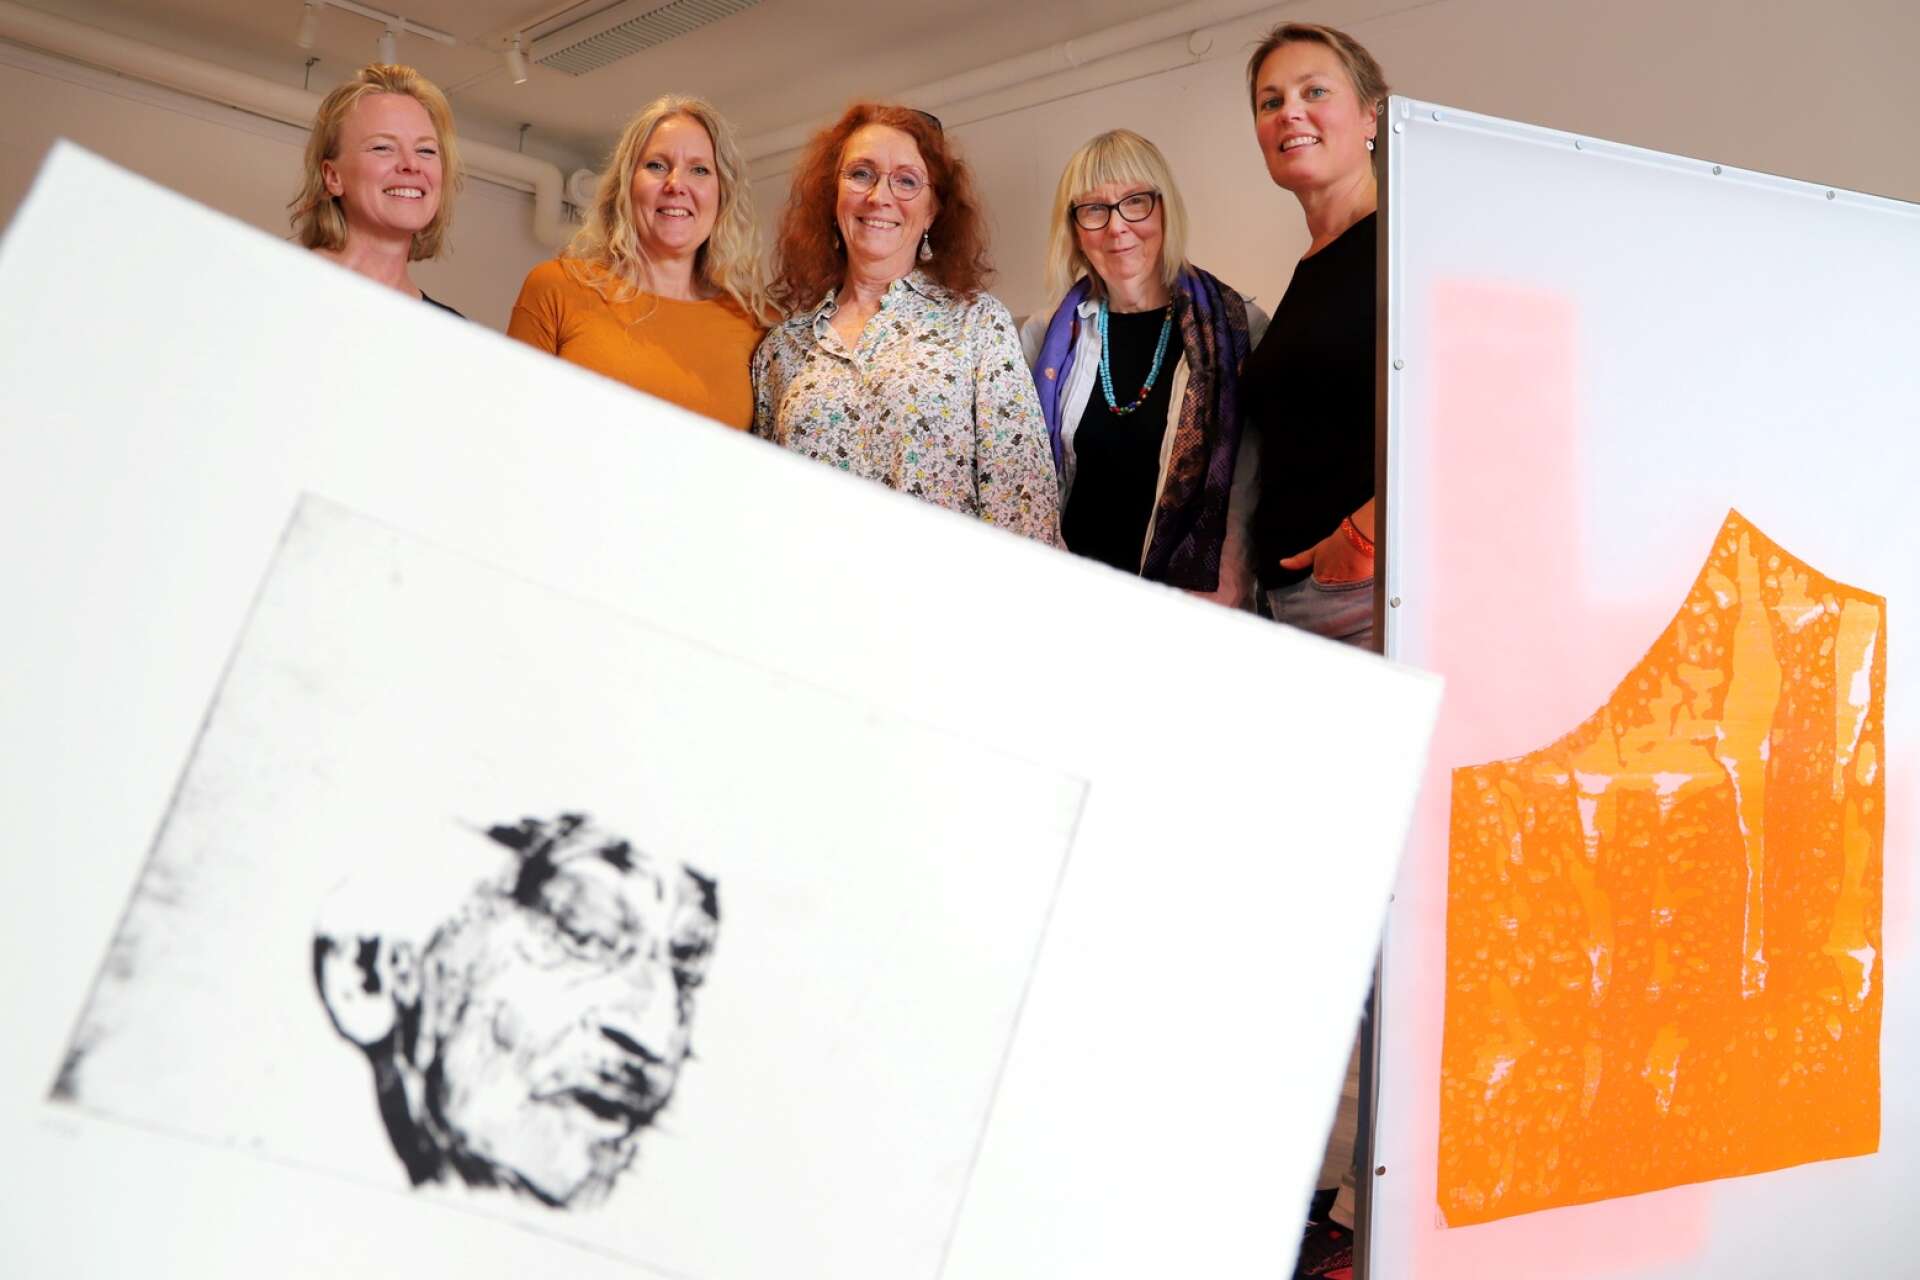 En ny utställning har öppnat på Konst i Karlstad och då är det fullt fokus på grafik. Jennie Dahlén, Veronica Odén, Helena Elfgren, Malin Sellmann och Erika Broman är fem av de tio konstnärer som ställer ut i en konstart på uppgång.